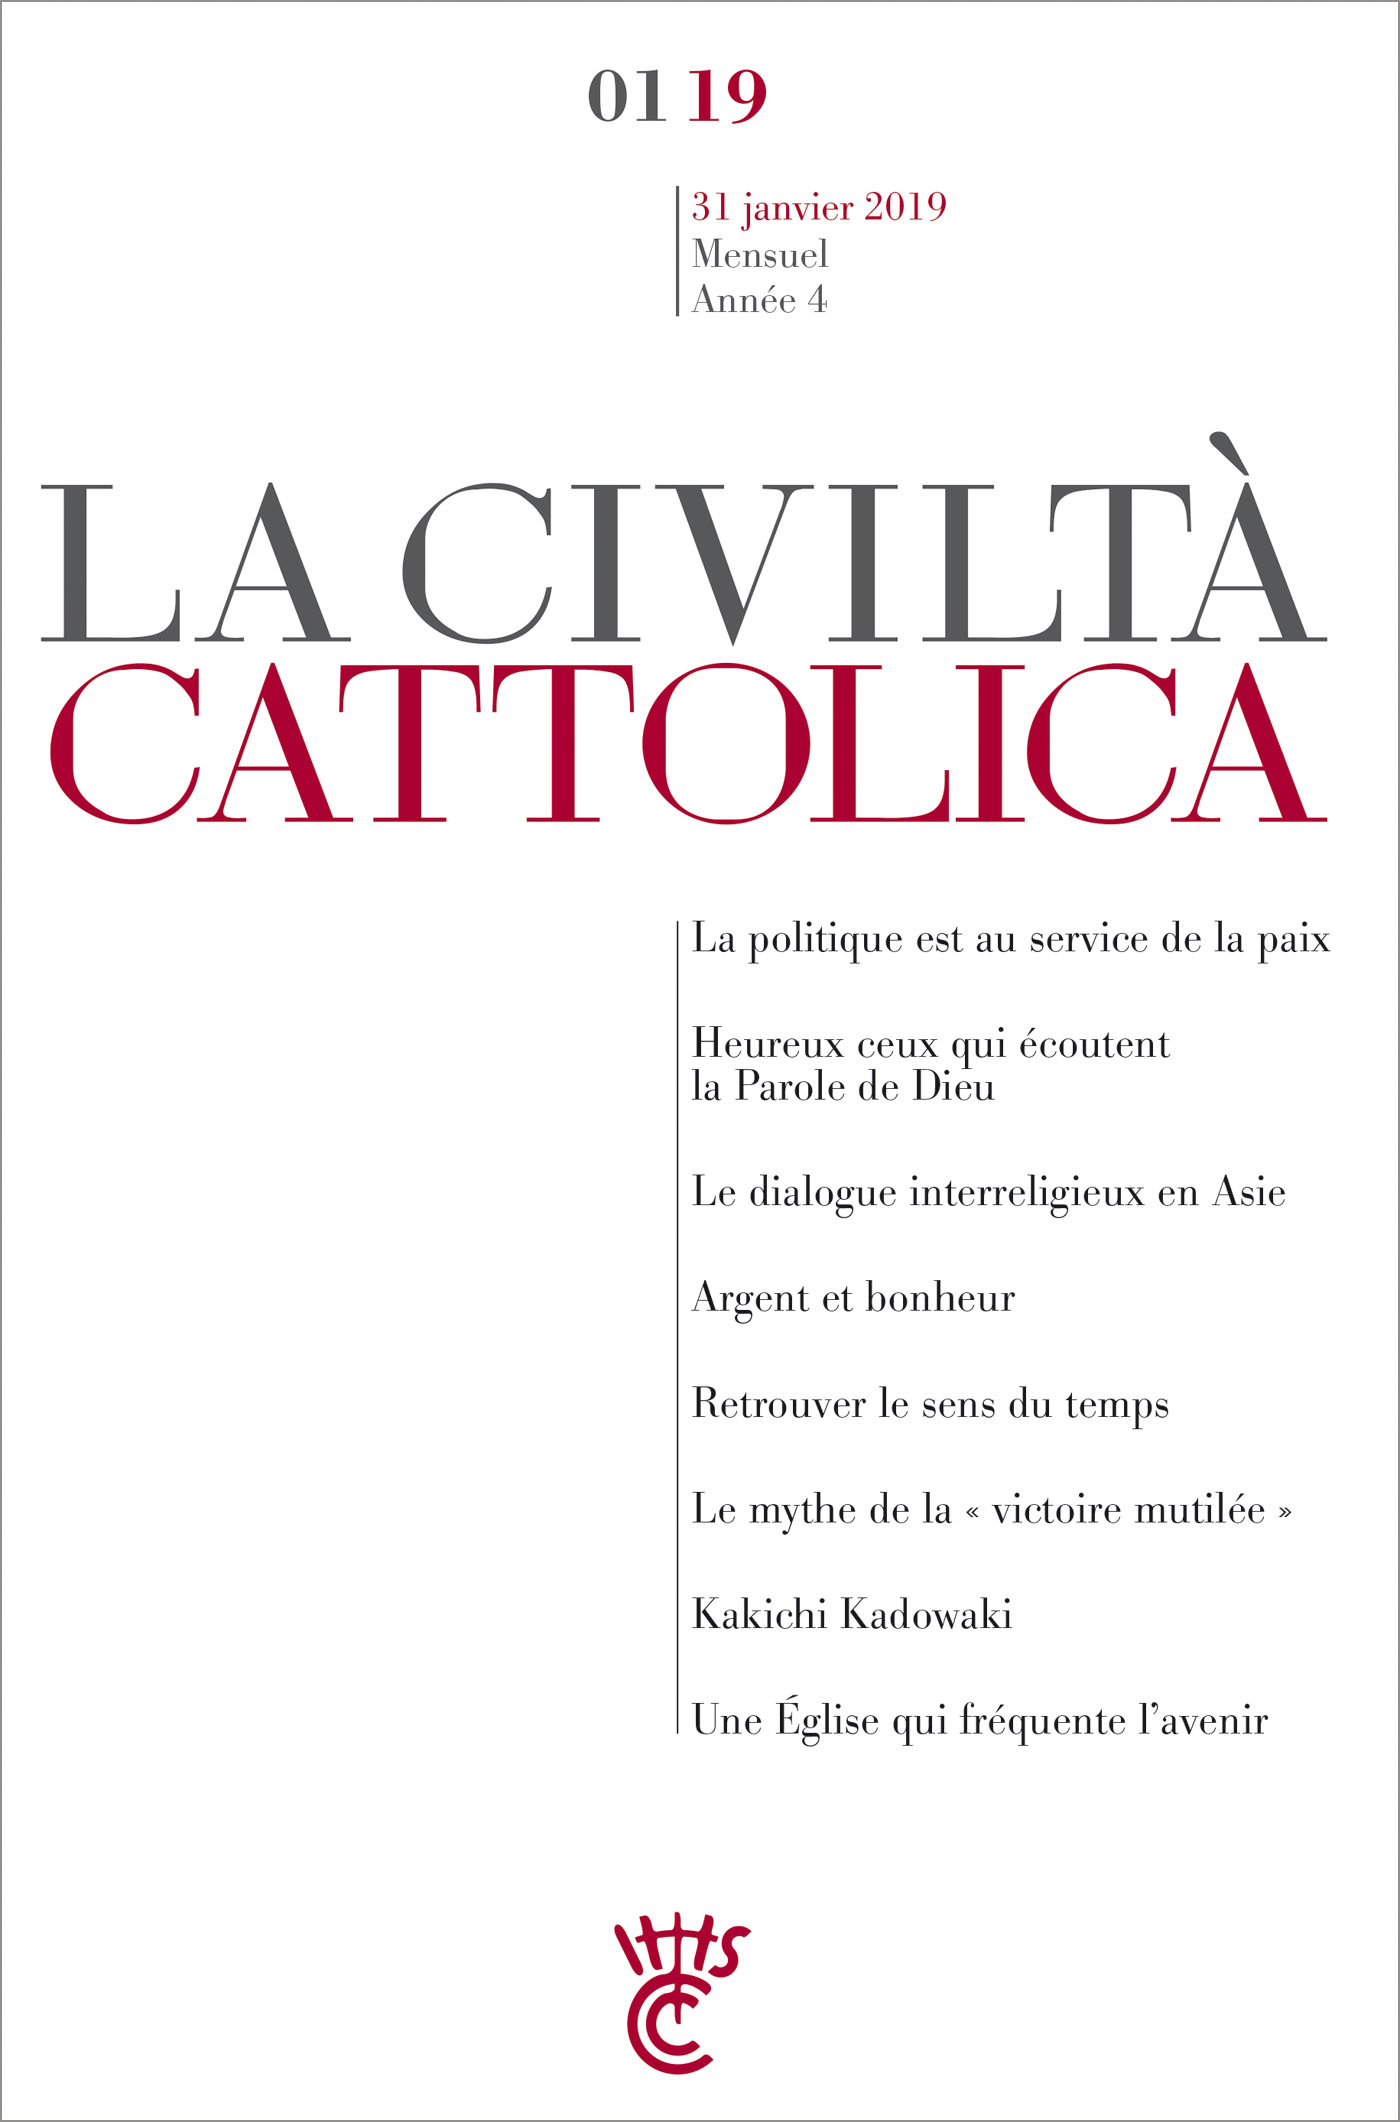 LA CIVILTA CATTOLICA - JANVIER 2019